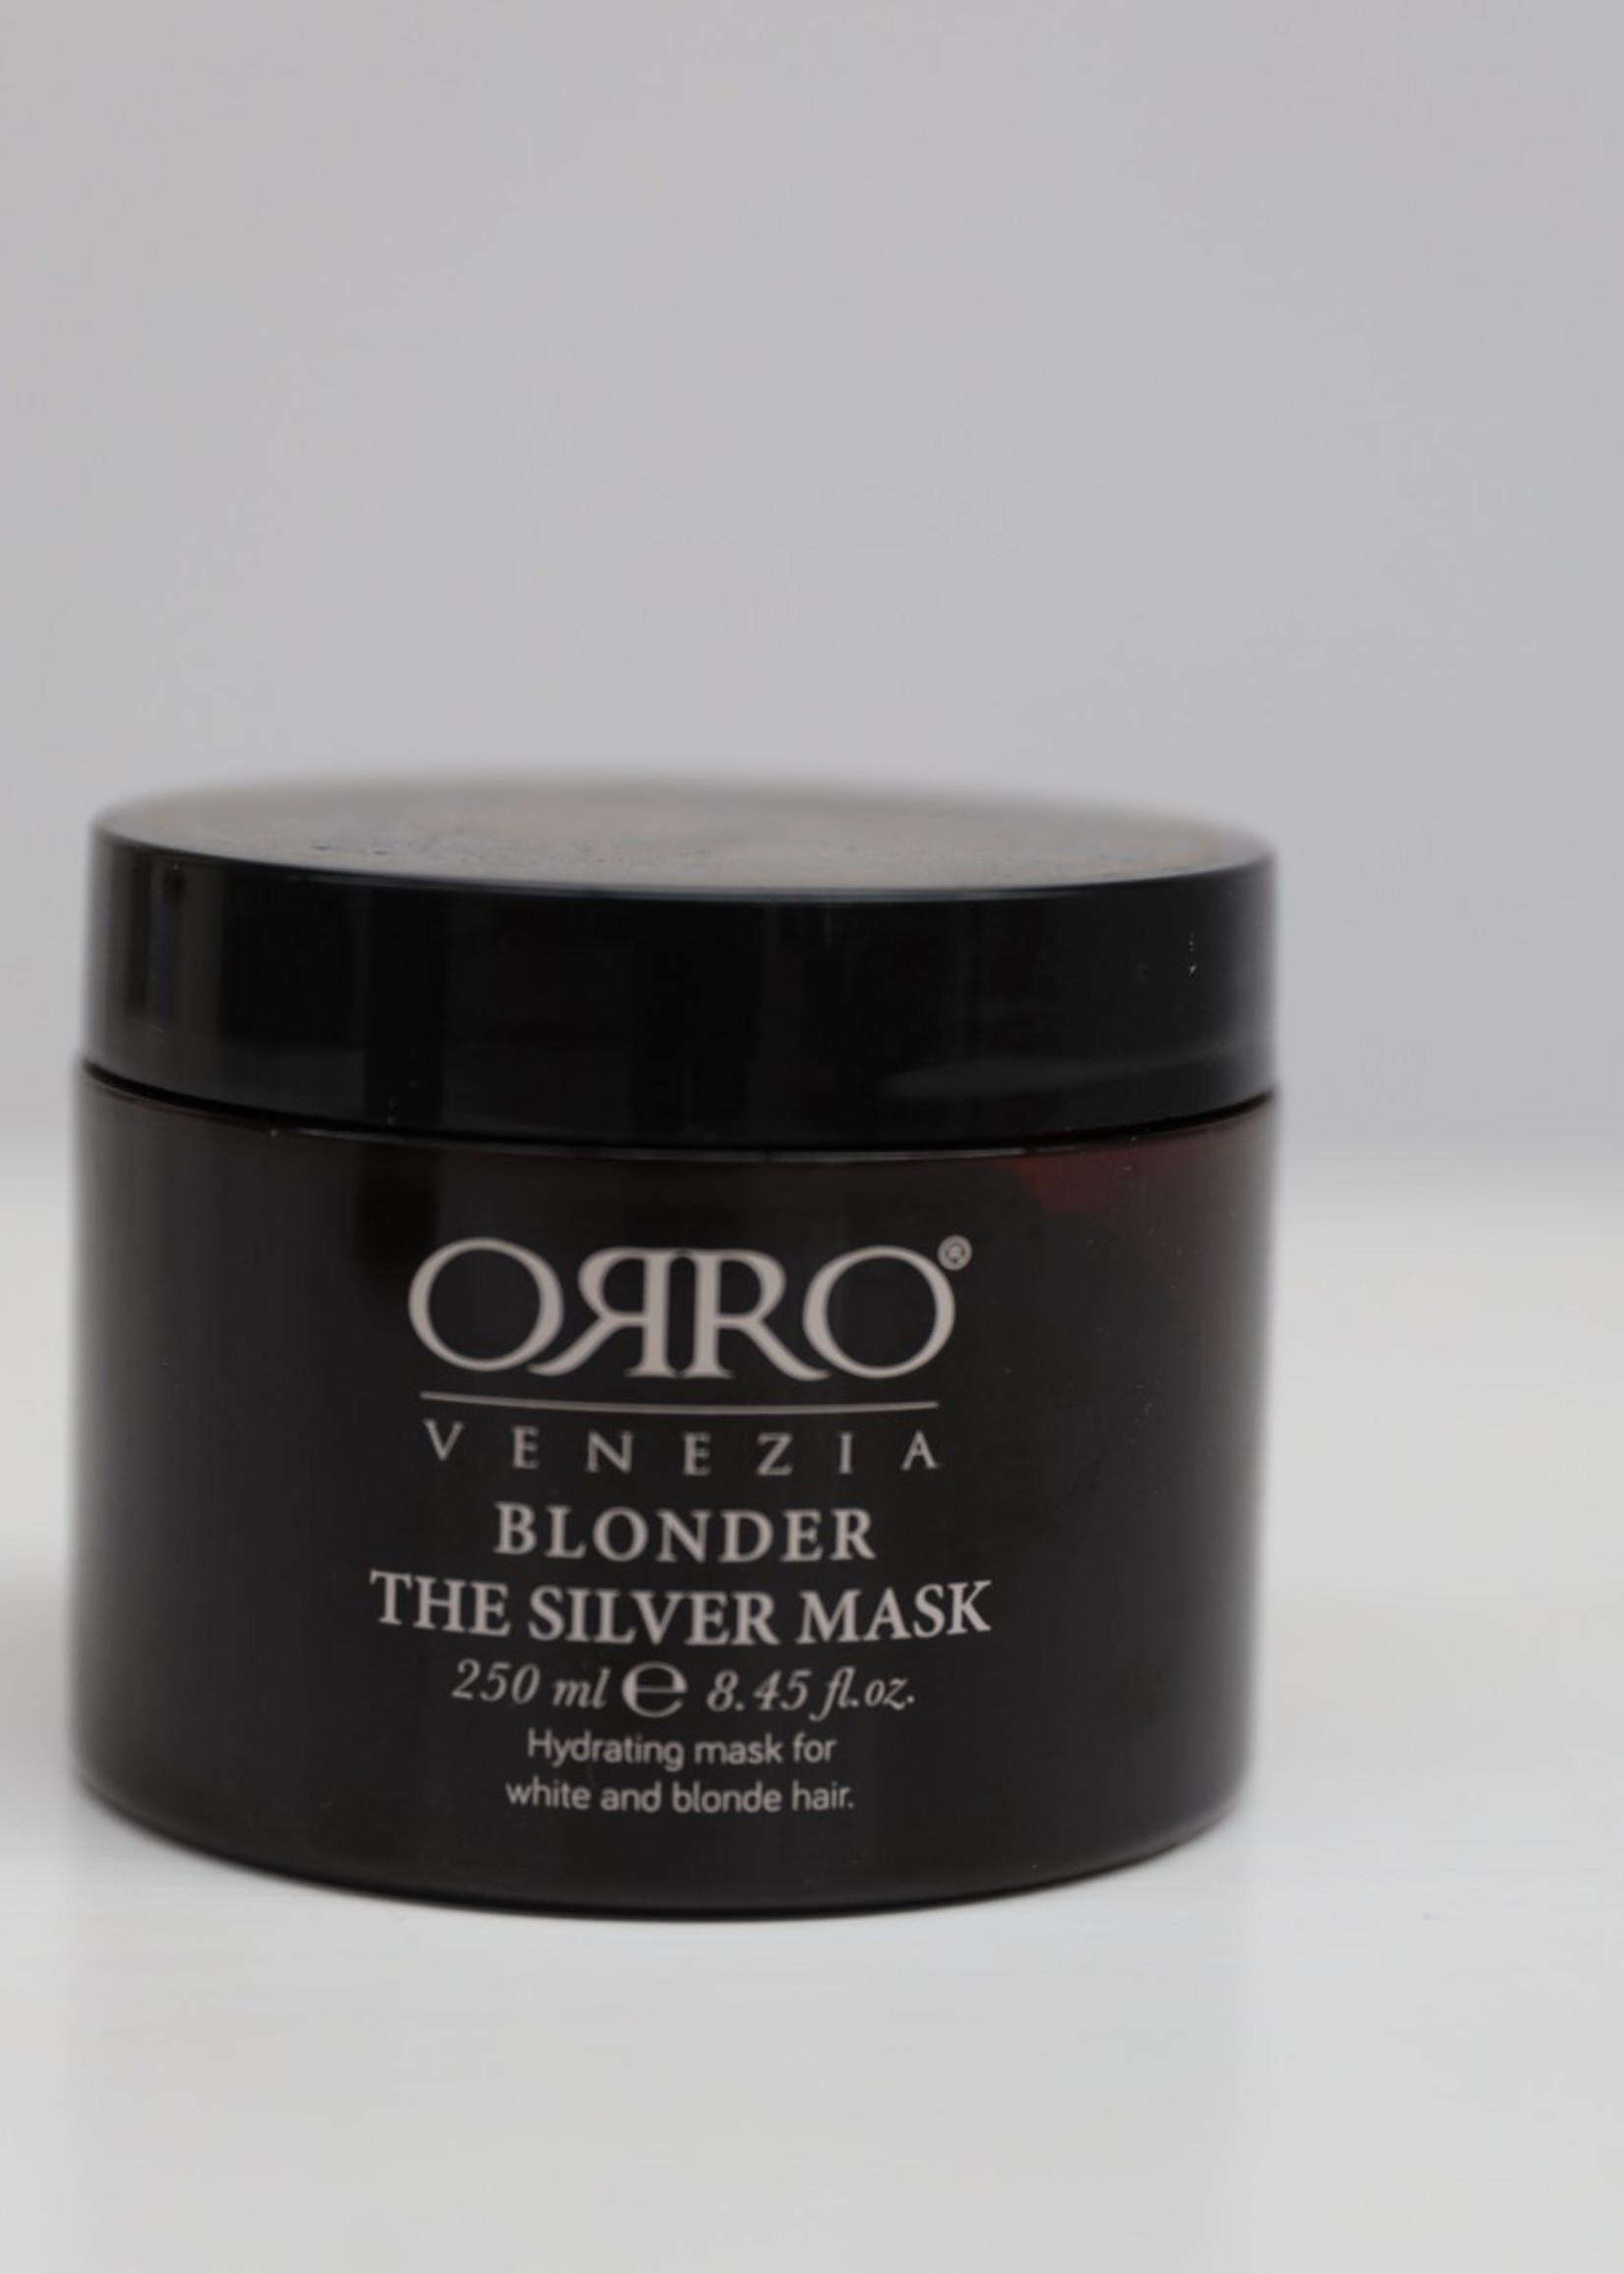 ORRO ORRO Blonder Silver Mask 250ml